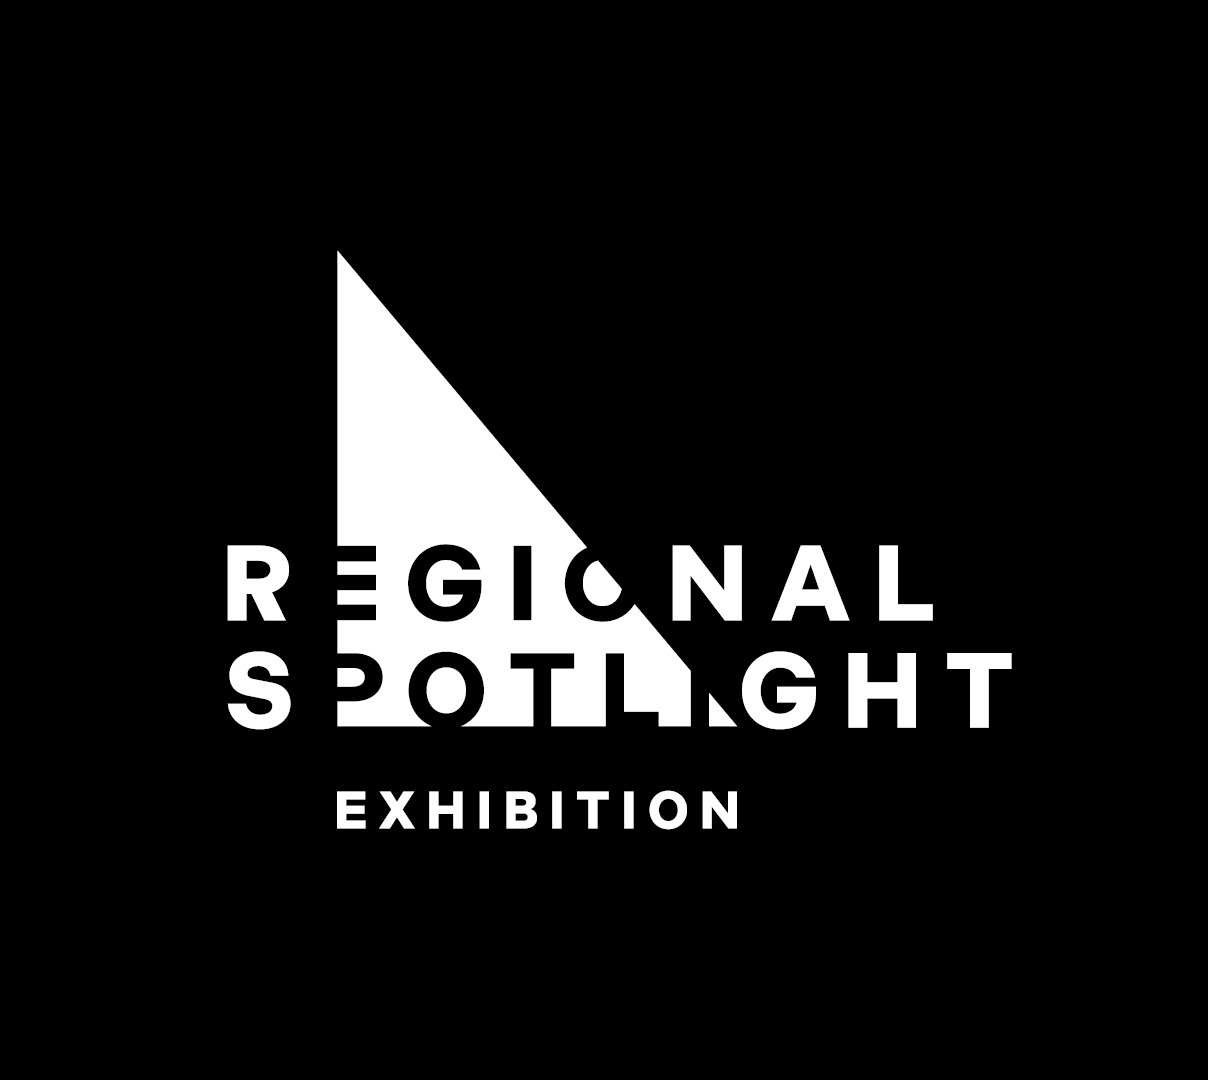 Regional Spotlight Exhibition at HBRG